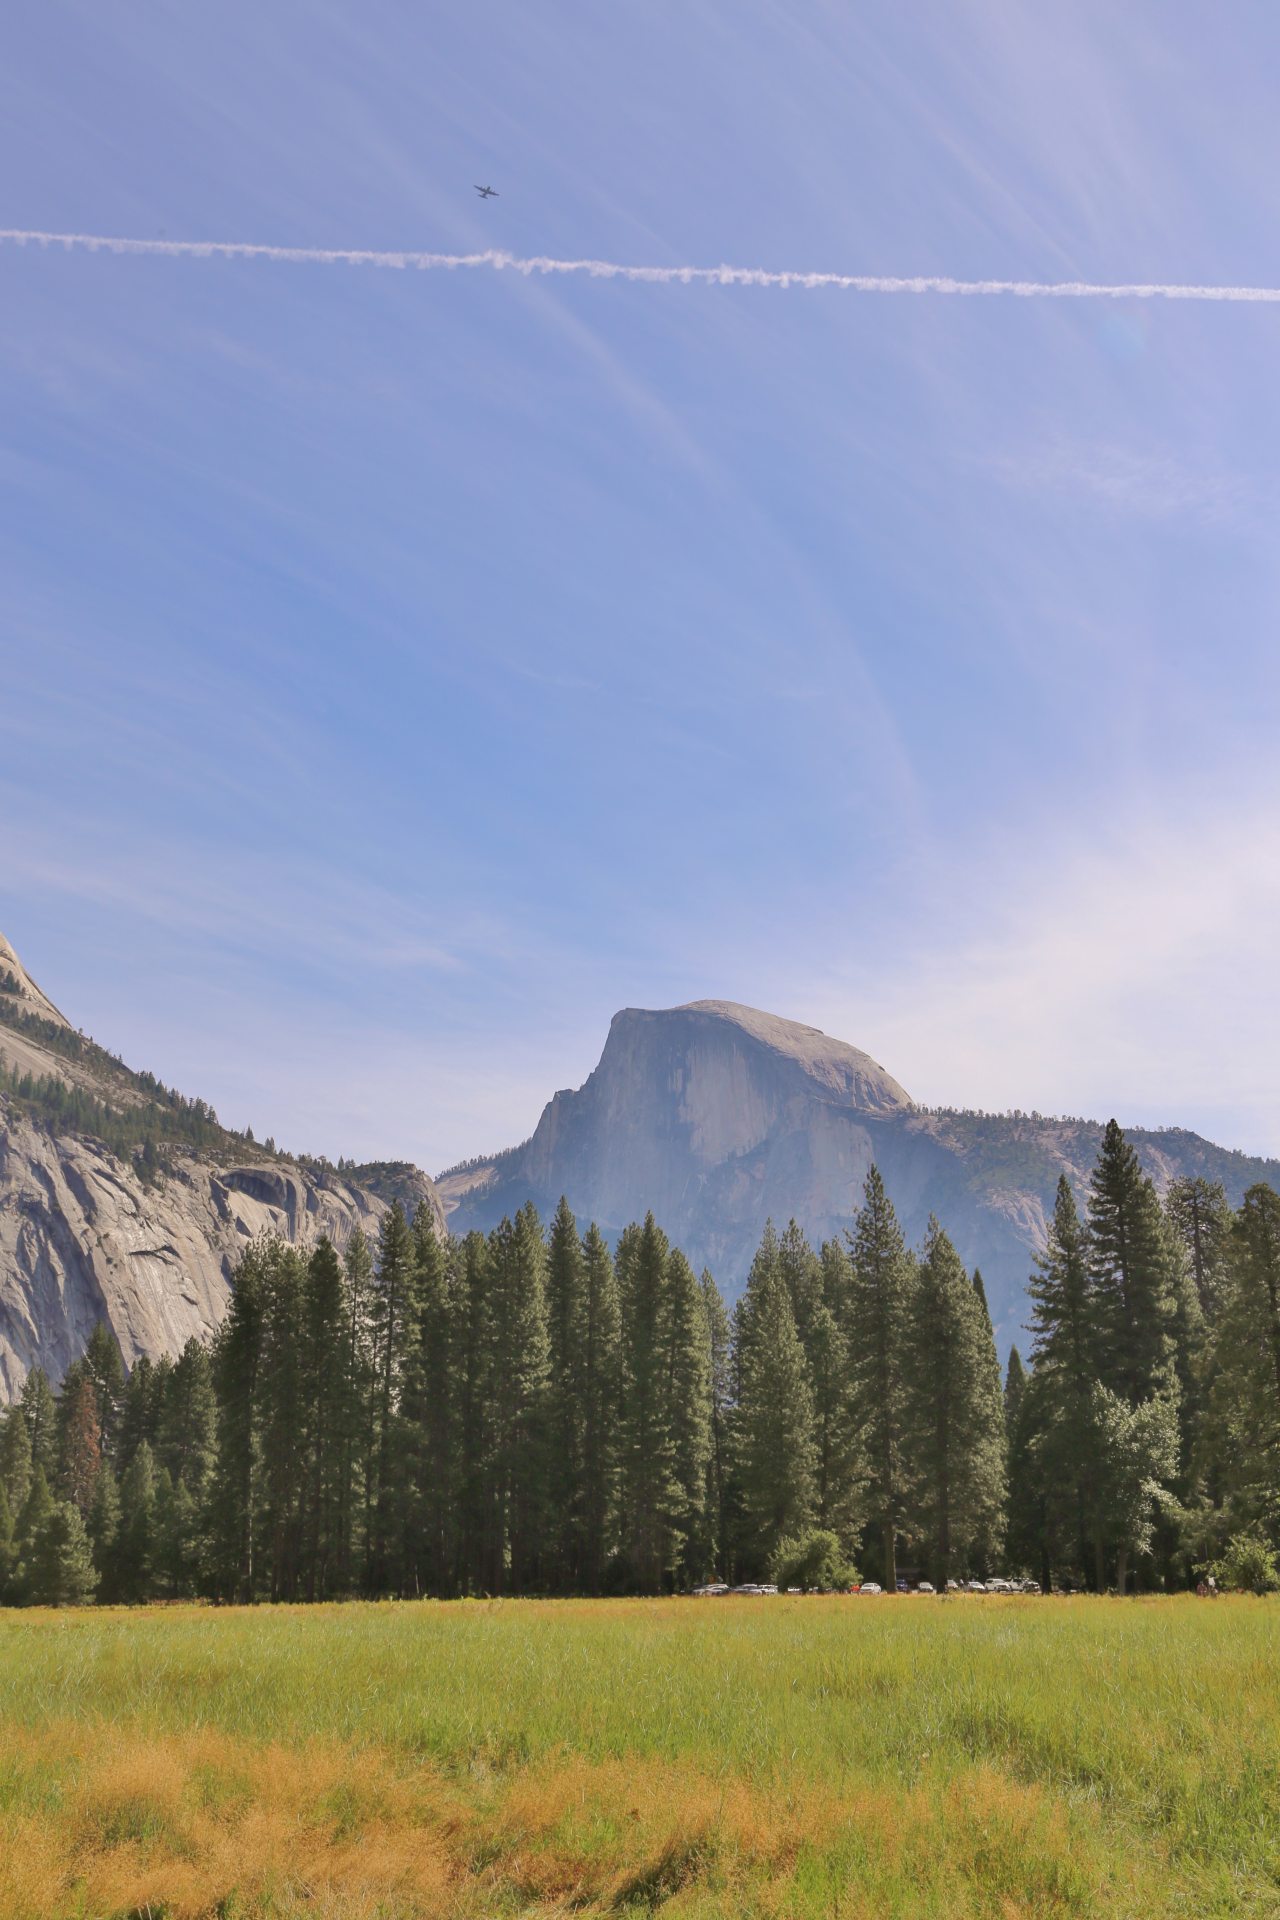 Half Dome in Aktion - Aussicht, Bäume, Berg, Fernsicht, Flugzeug, Half Dome, Himmel, Kalifornien, Kondensstreifen, Landschaft, Natur, Panorama, Wiese, Wolken, Yosemite National Park - (Yosemite Village, Yosemite National Park, California, Vereinigte Staaten)